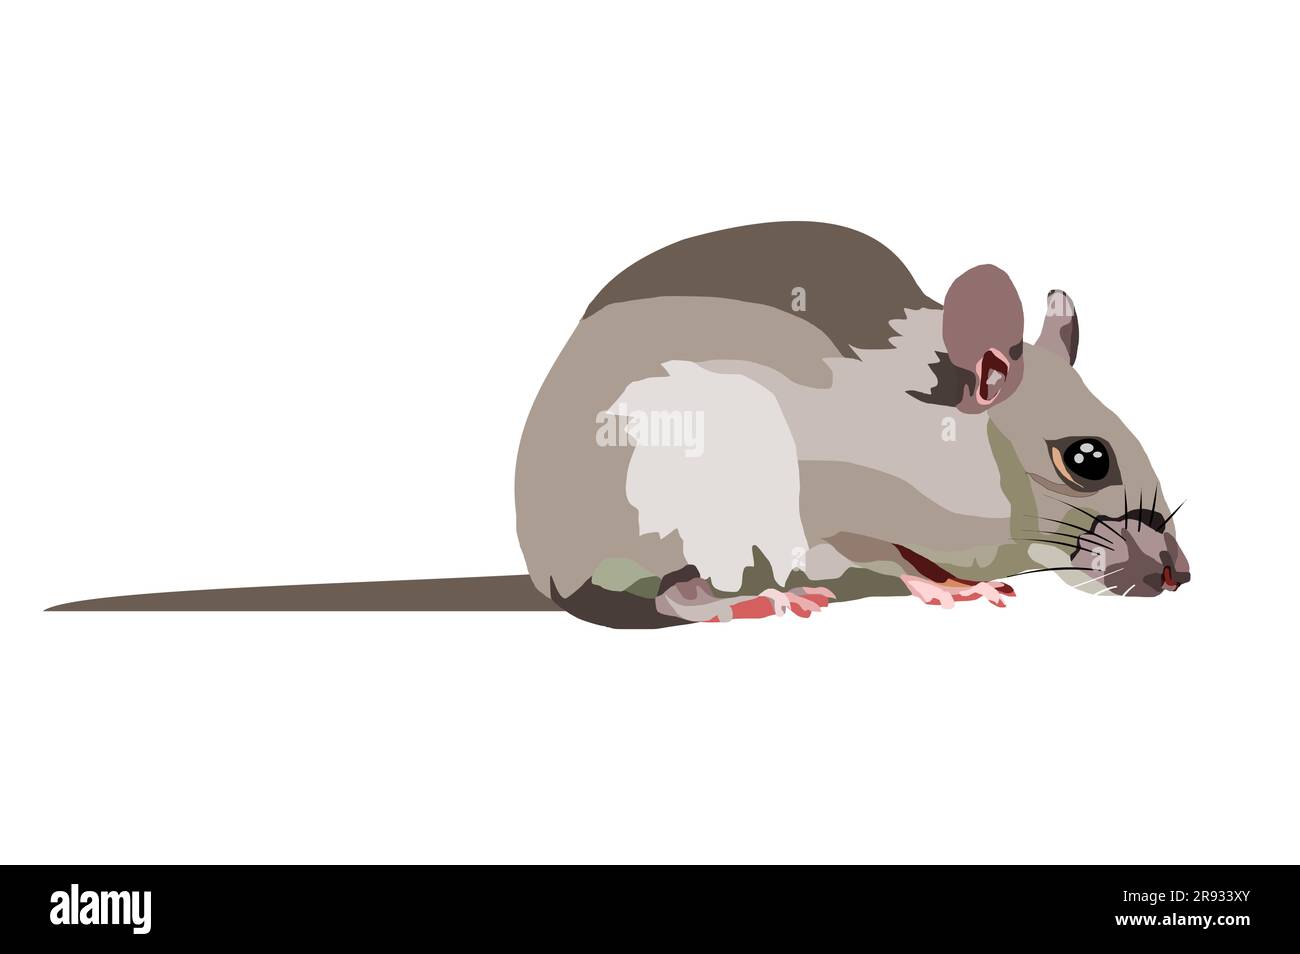 Ratte Isolat auf weißem Hintergrund, Maus ist Nagetiere, die Schmutz verursachen und können Träger der Krankheit sein, die grauen Mäuse in Vektorgrafik Stock Vektor